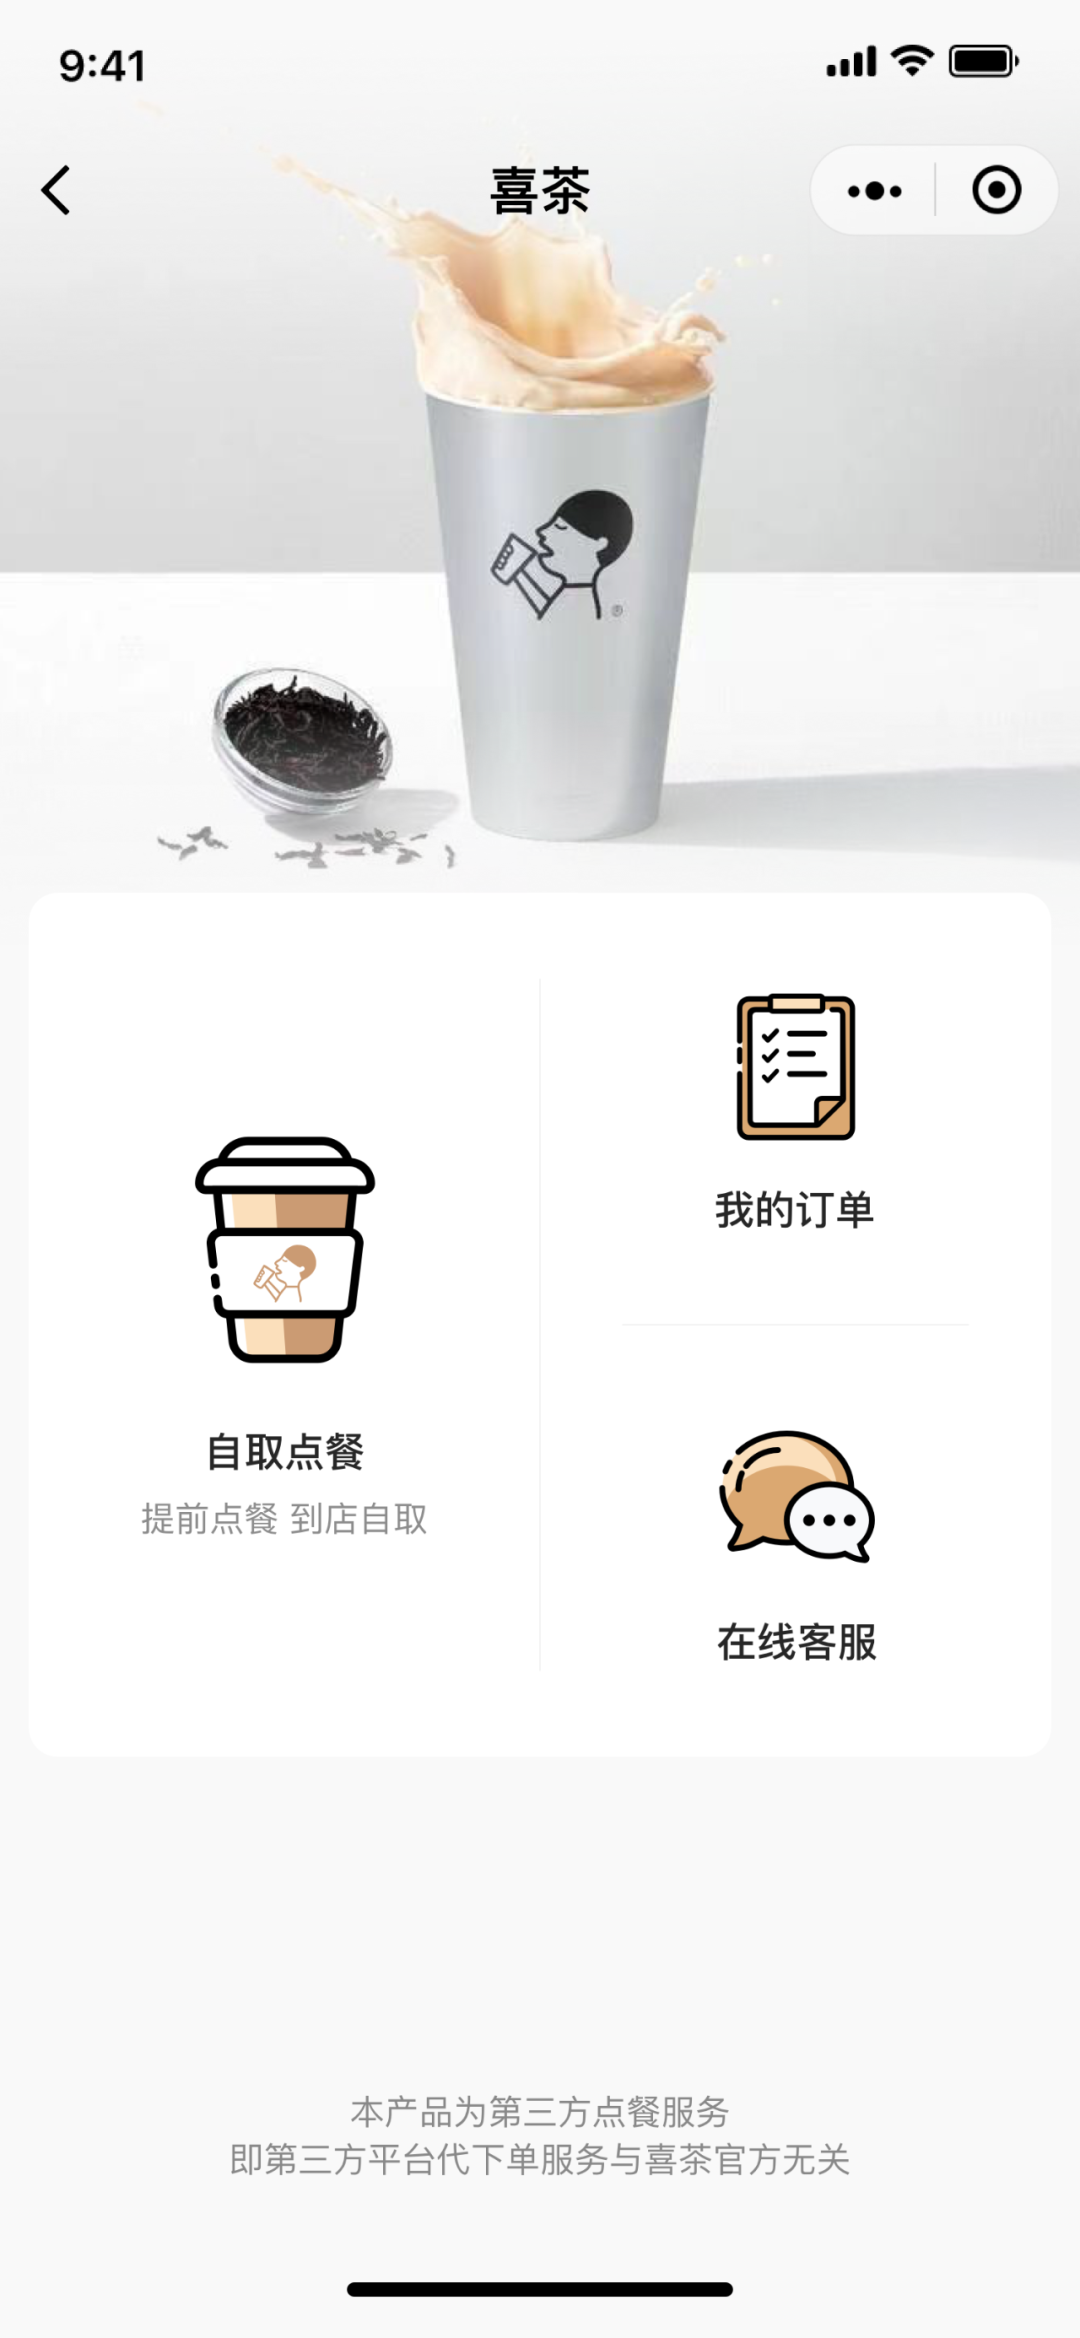 微客云新增VIP会员推广页功能，喜茶星巴克在线点餐功能开通！